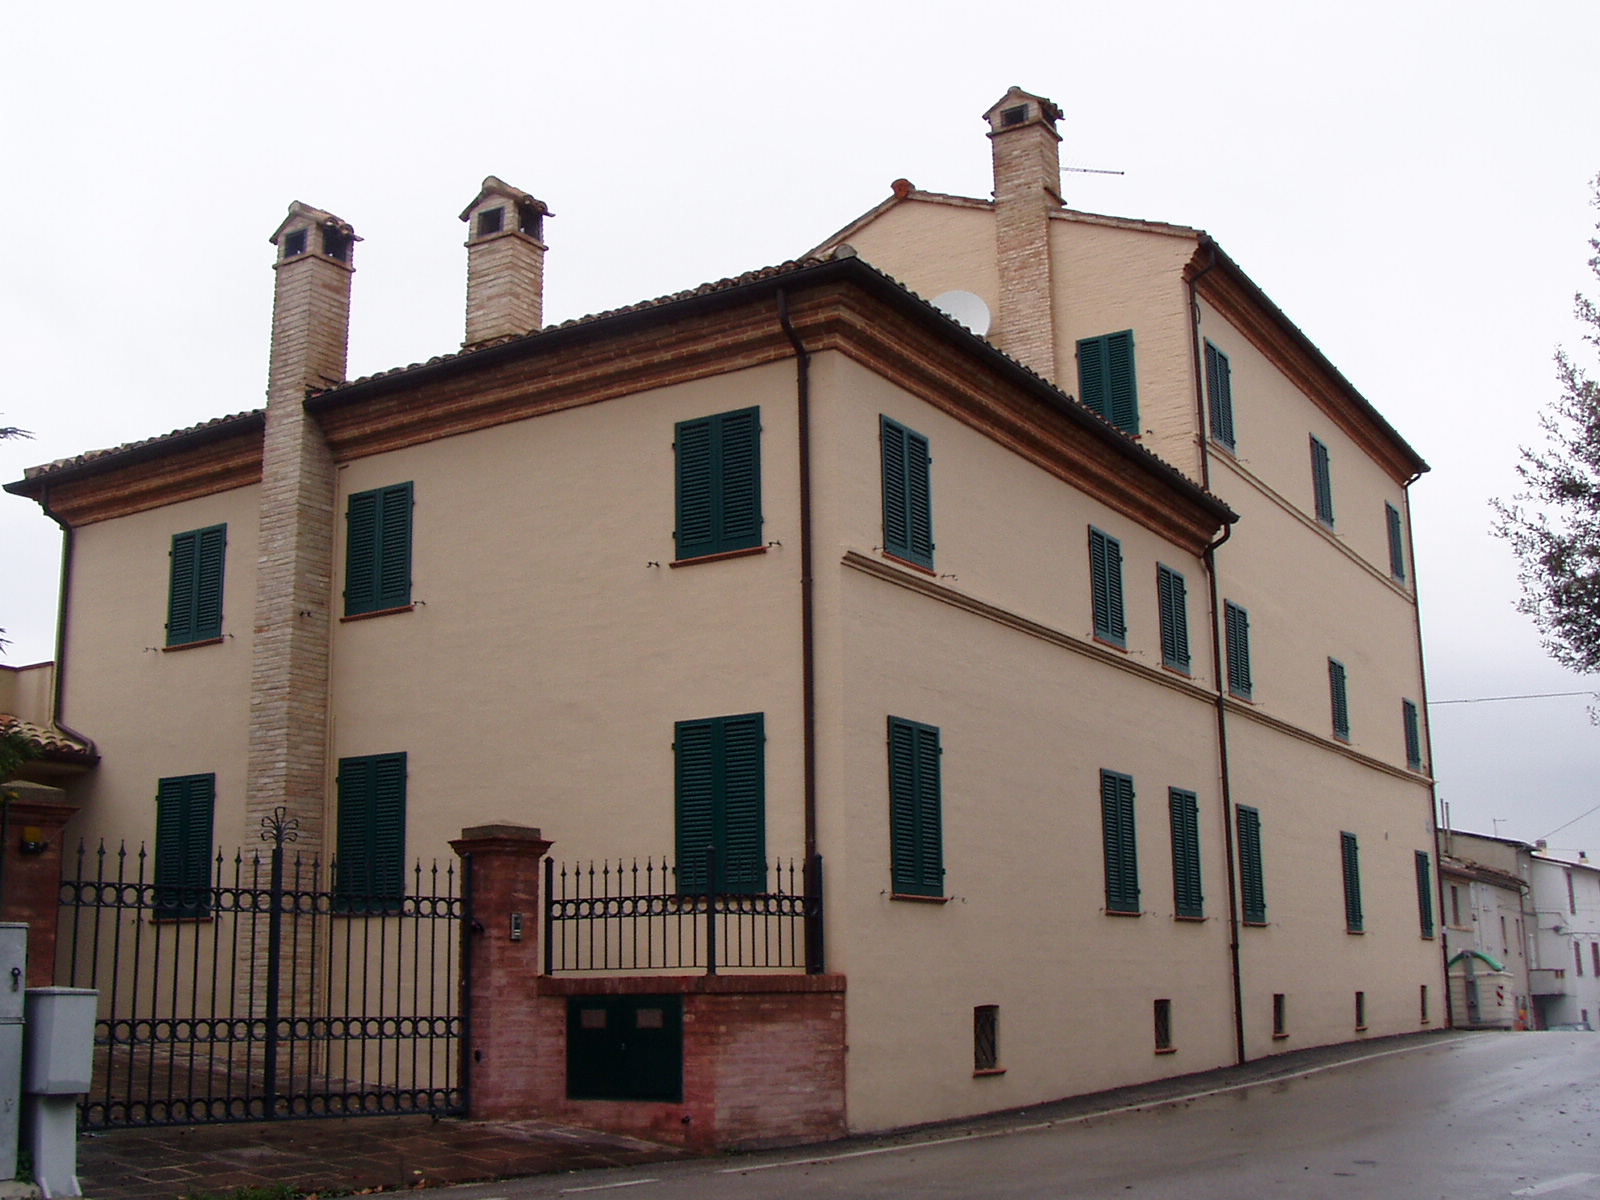 Palazzo Moreschi Rocchi (palazzo, nobiliare) - Santa Maria Nuova (AN) 